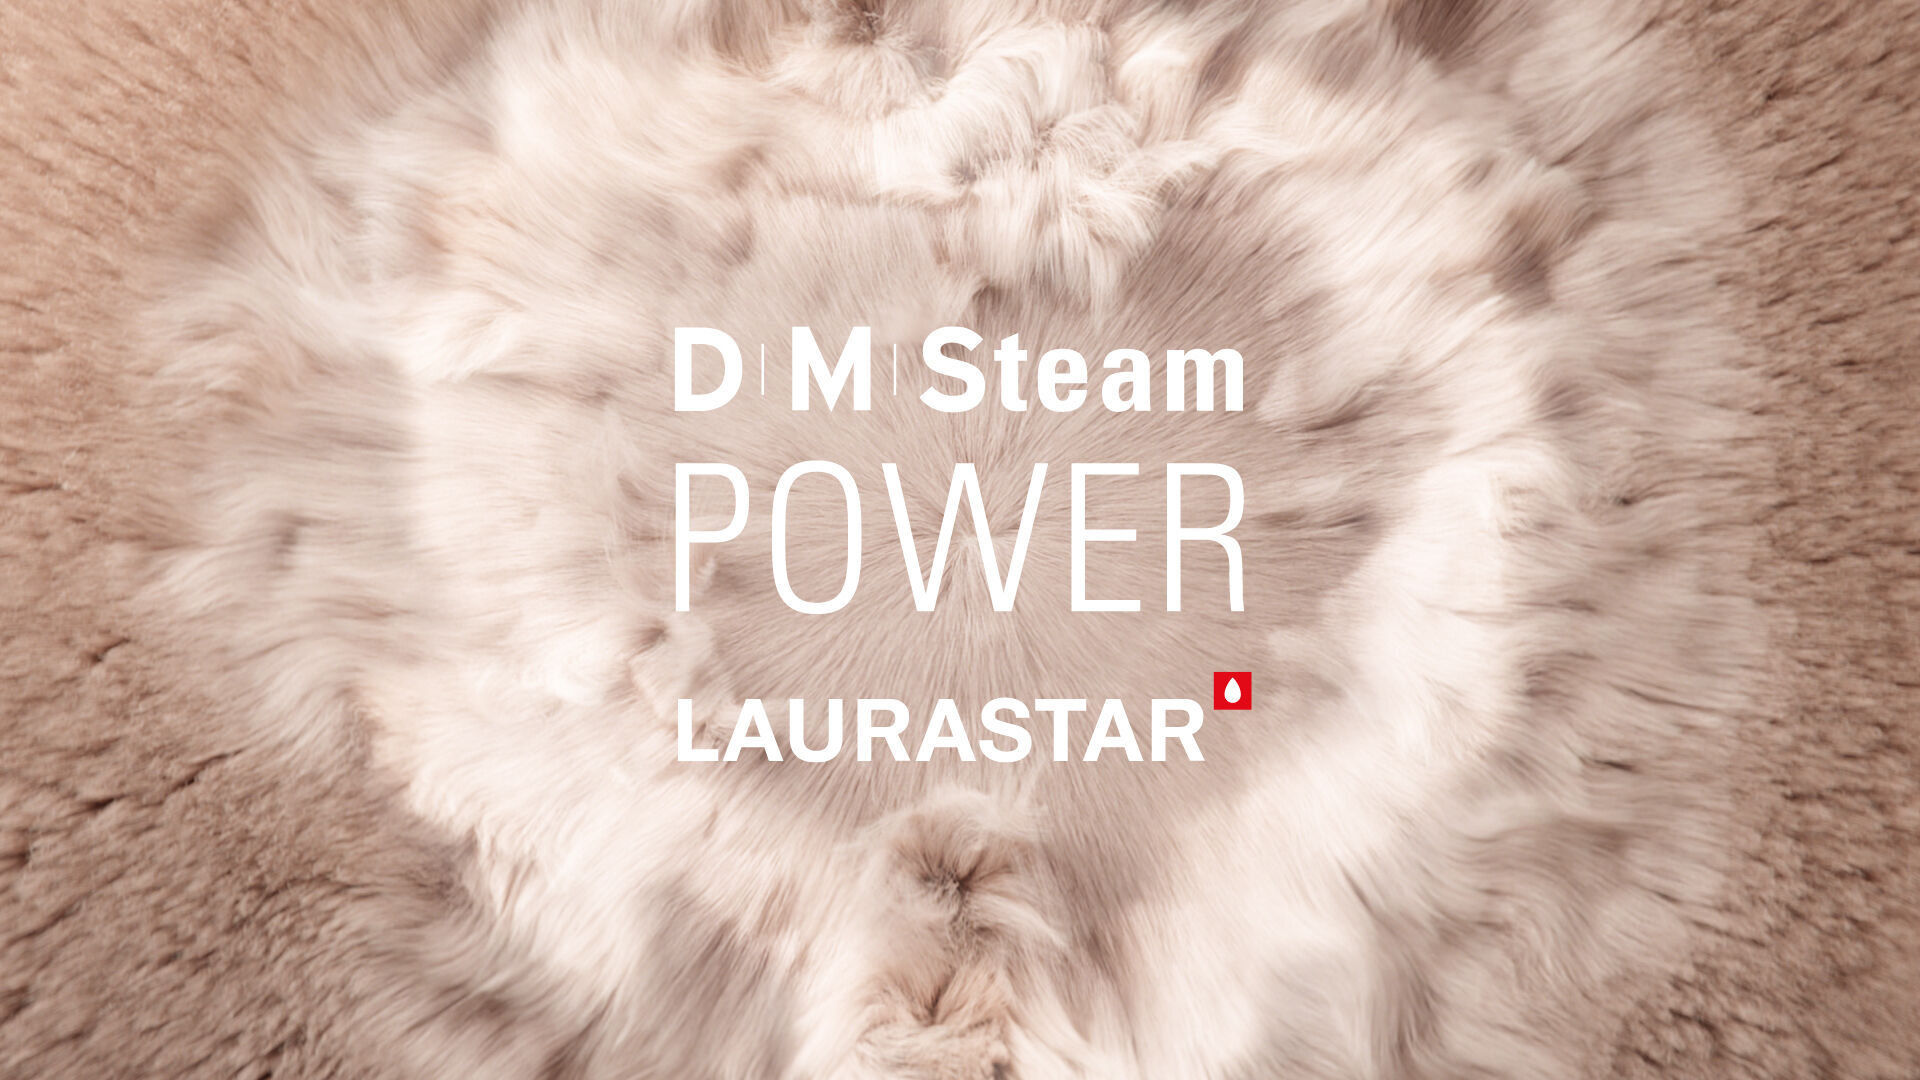 La vapeur DMS de Laurastar, technologie exclusive pour une performance, un soin et une hygiène exceptionnels sur toutes les matières